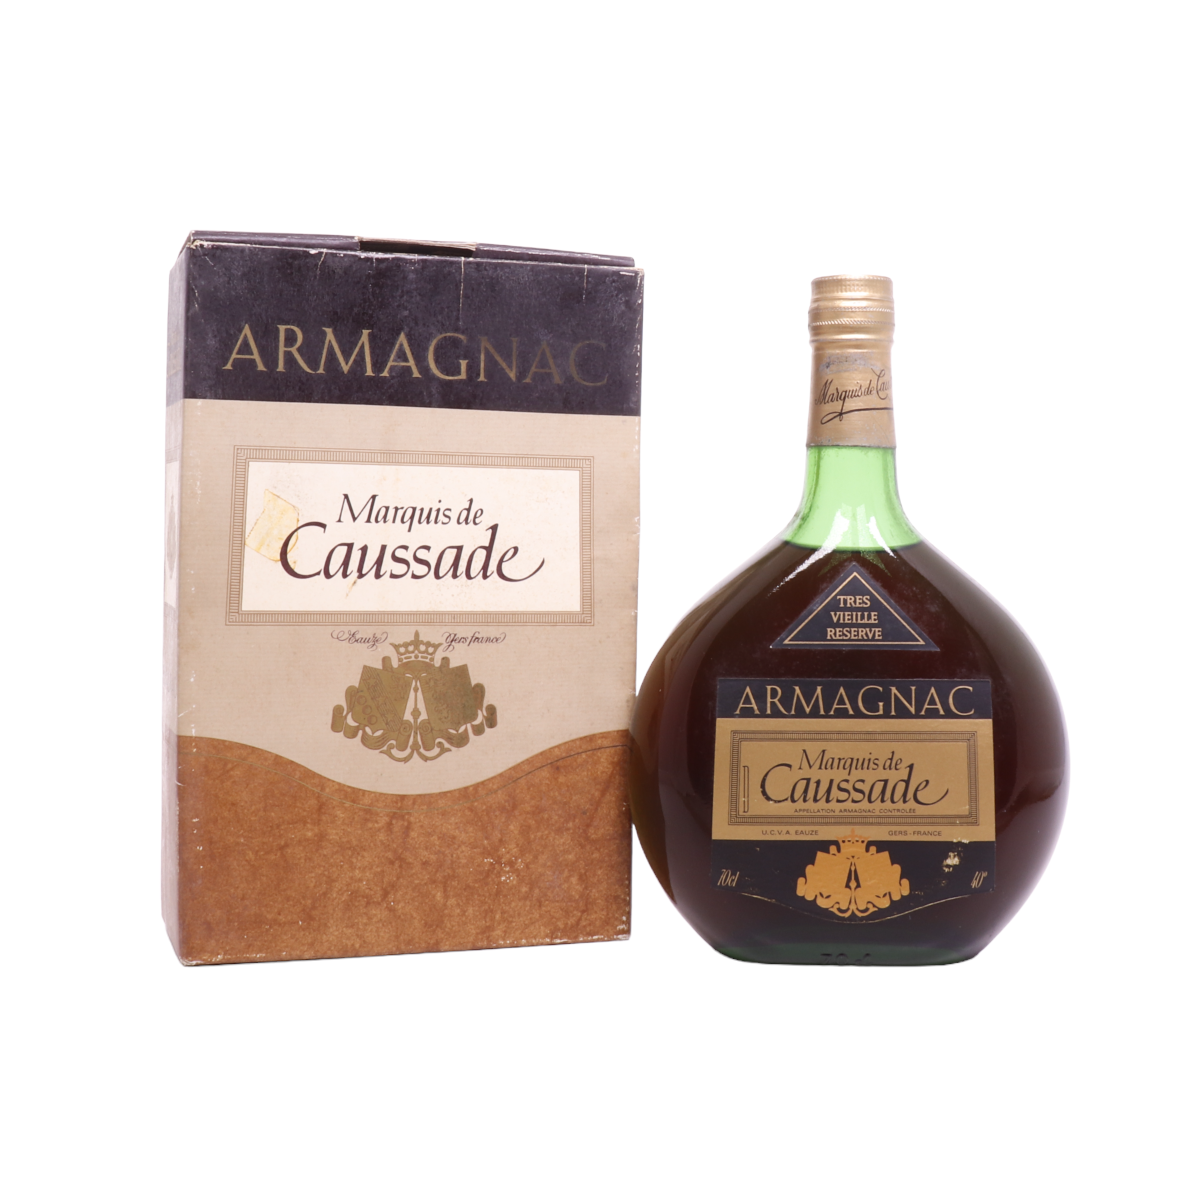 Buy Marquis de Caussade Armagnac Très Vieille Réserve at Vintage-Liquors